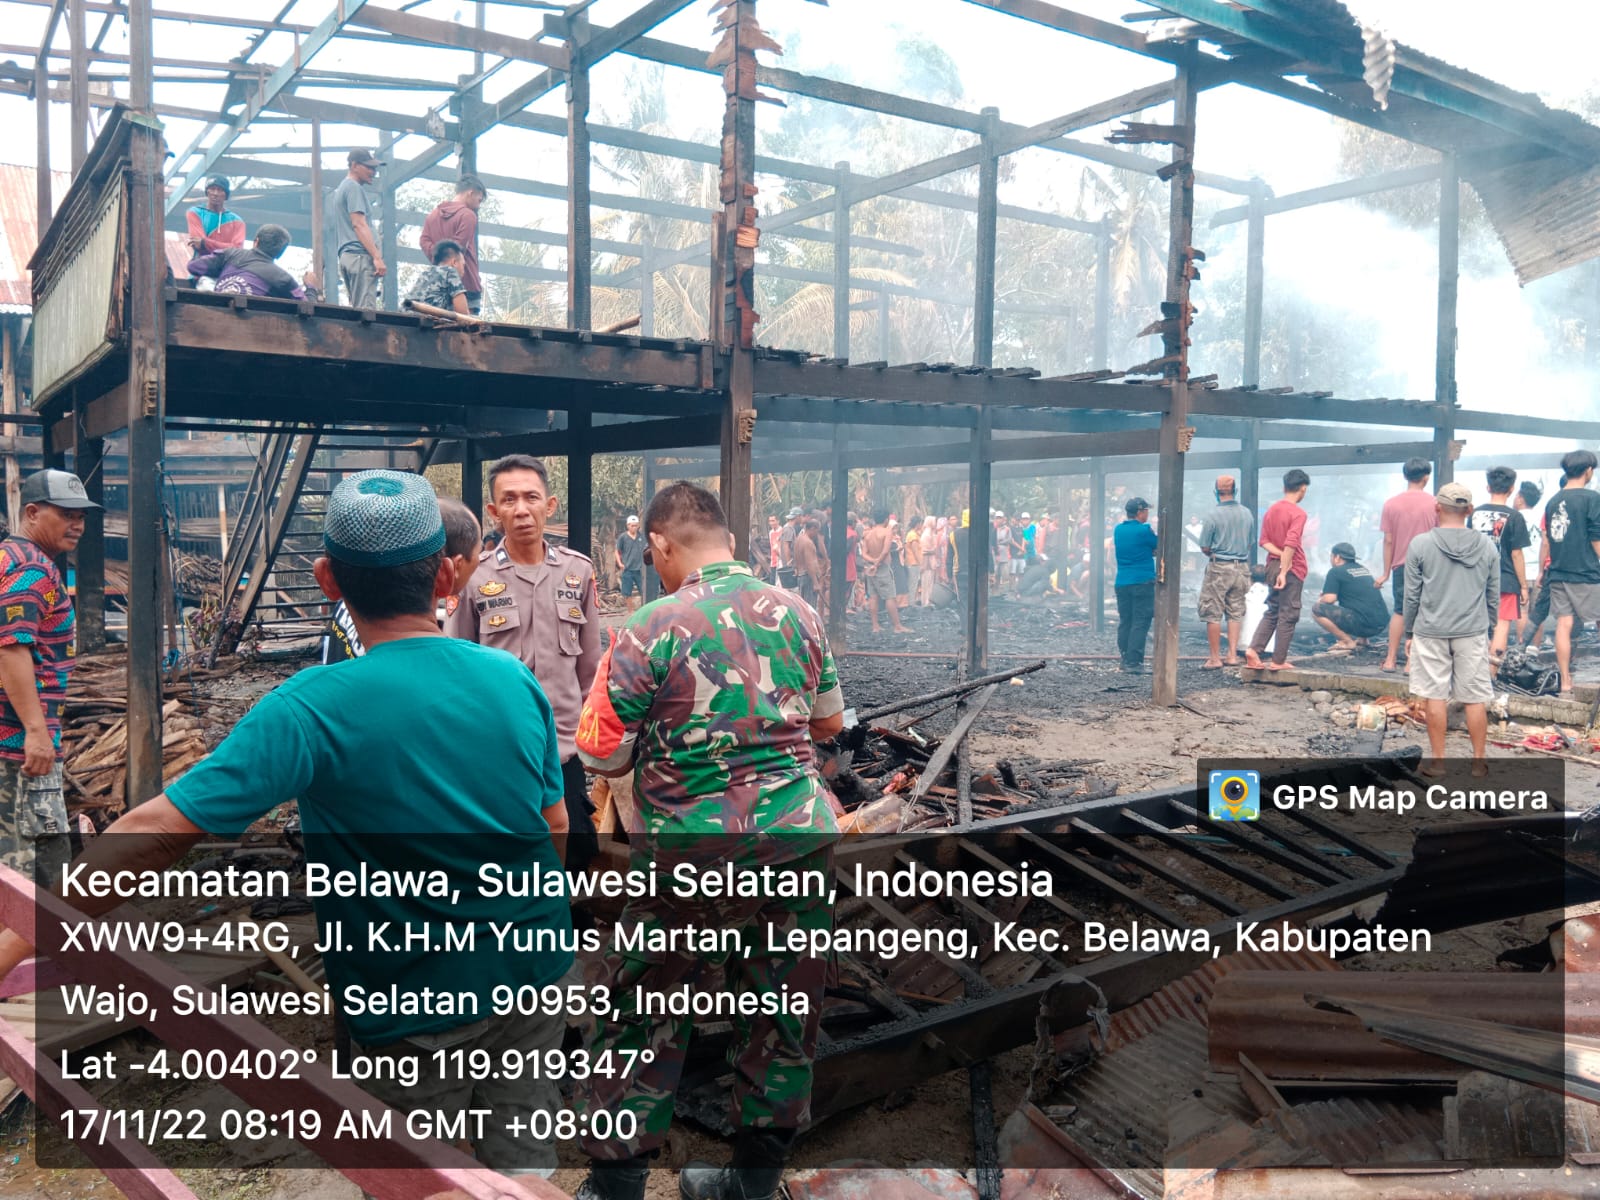 Peduli Wilayah, Kapolsek Belawa Sambangi Lokasi Kebakaran di Dusun Lautang